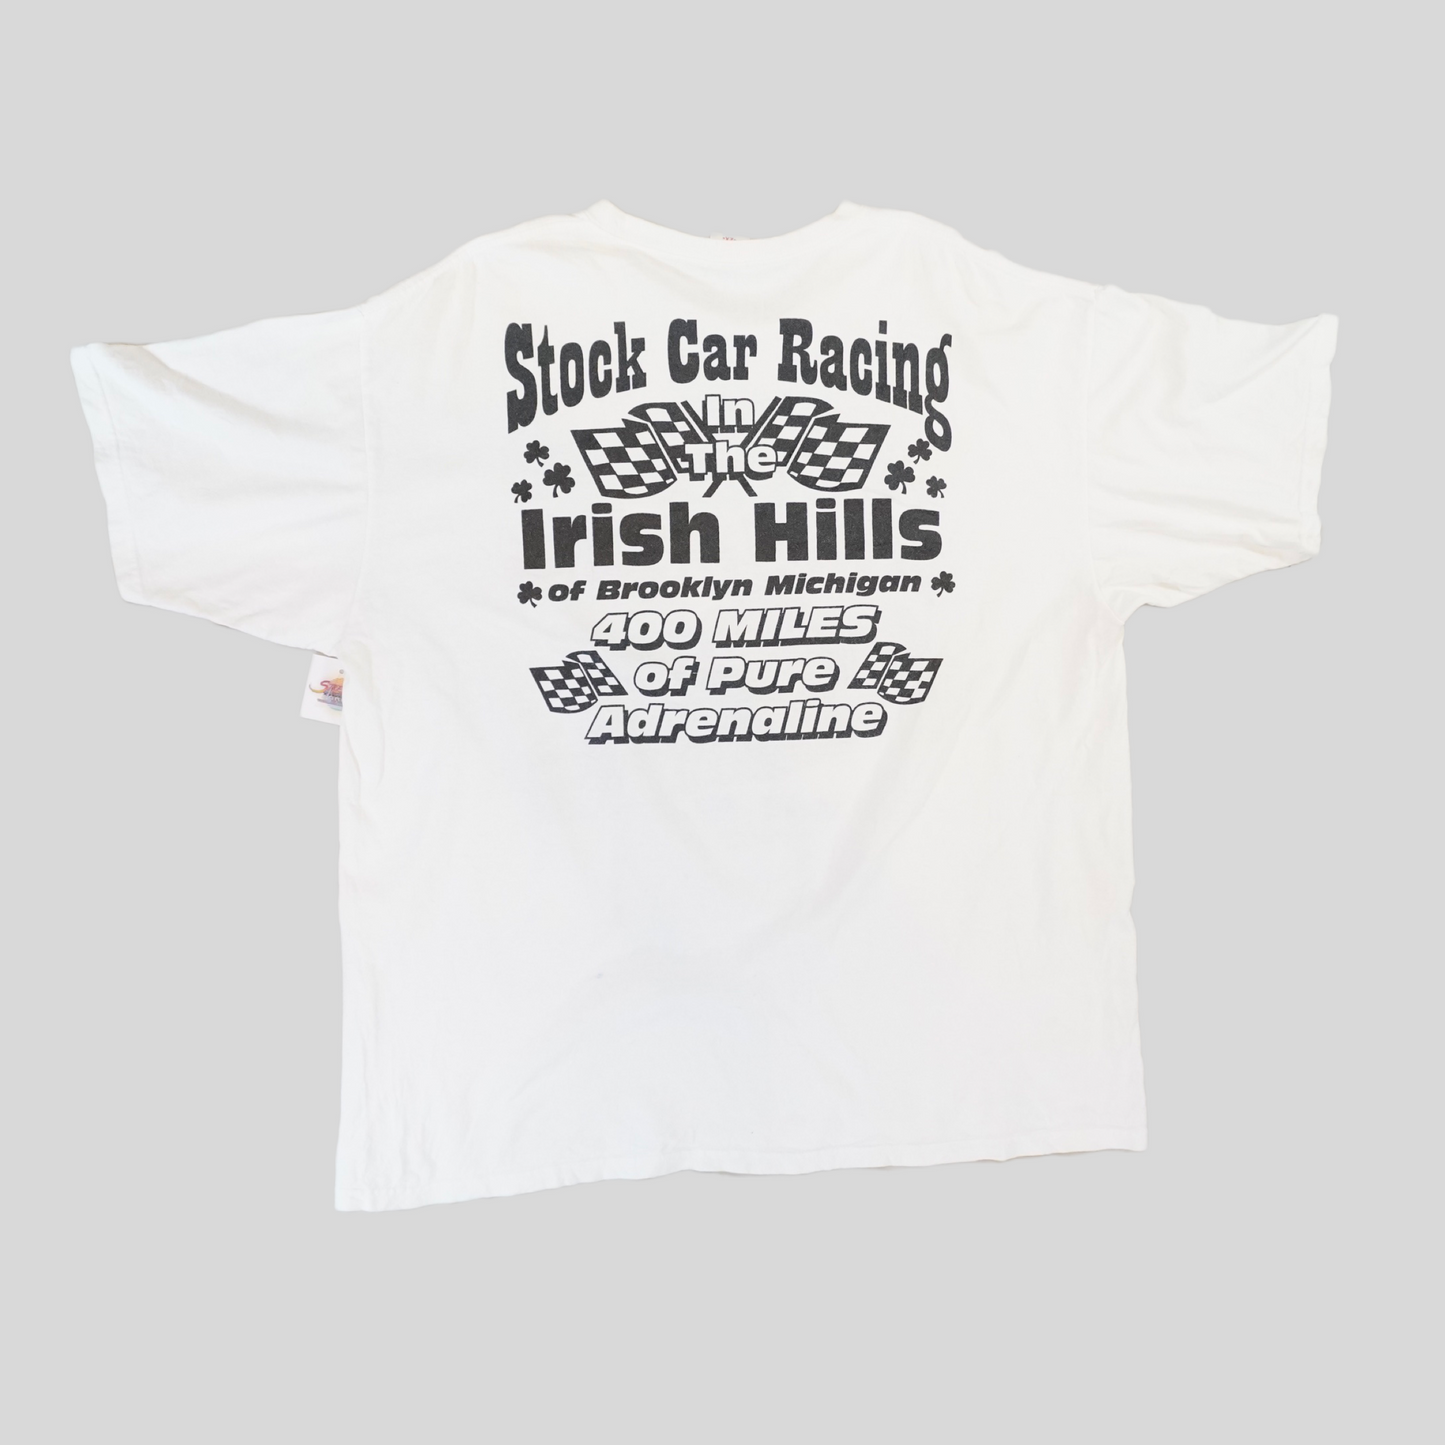 (2XL) 2012 400 Mile Race “Stock Car Racing” T-shirt